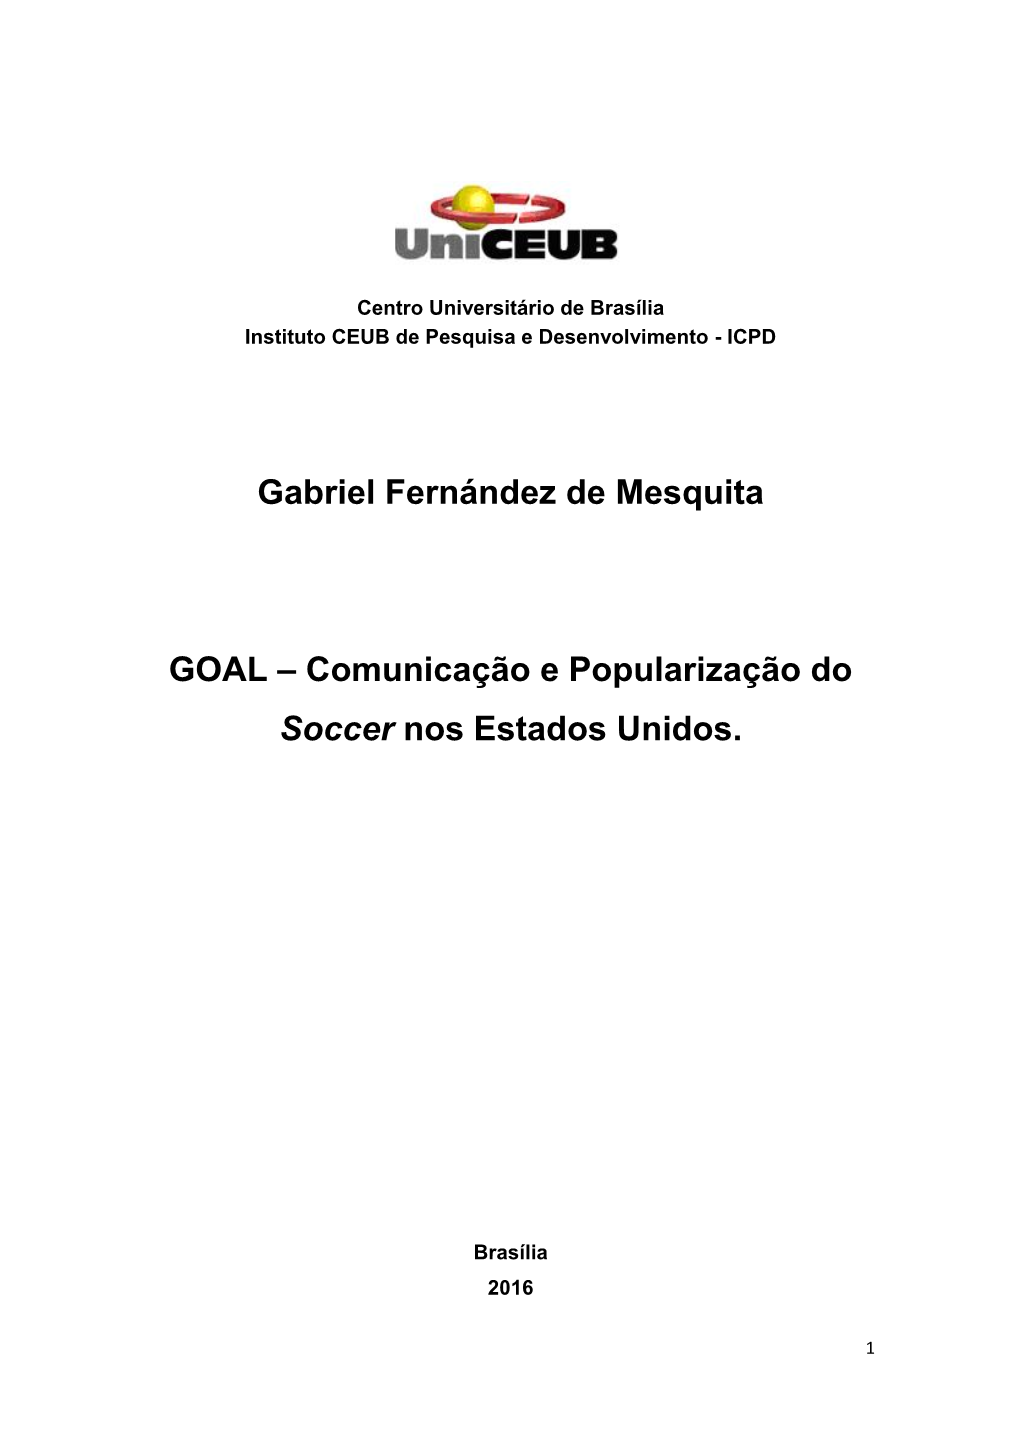 Gabriel Fernández De Mesquita GOAL – Comunicação E Popularização